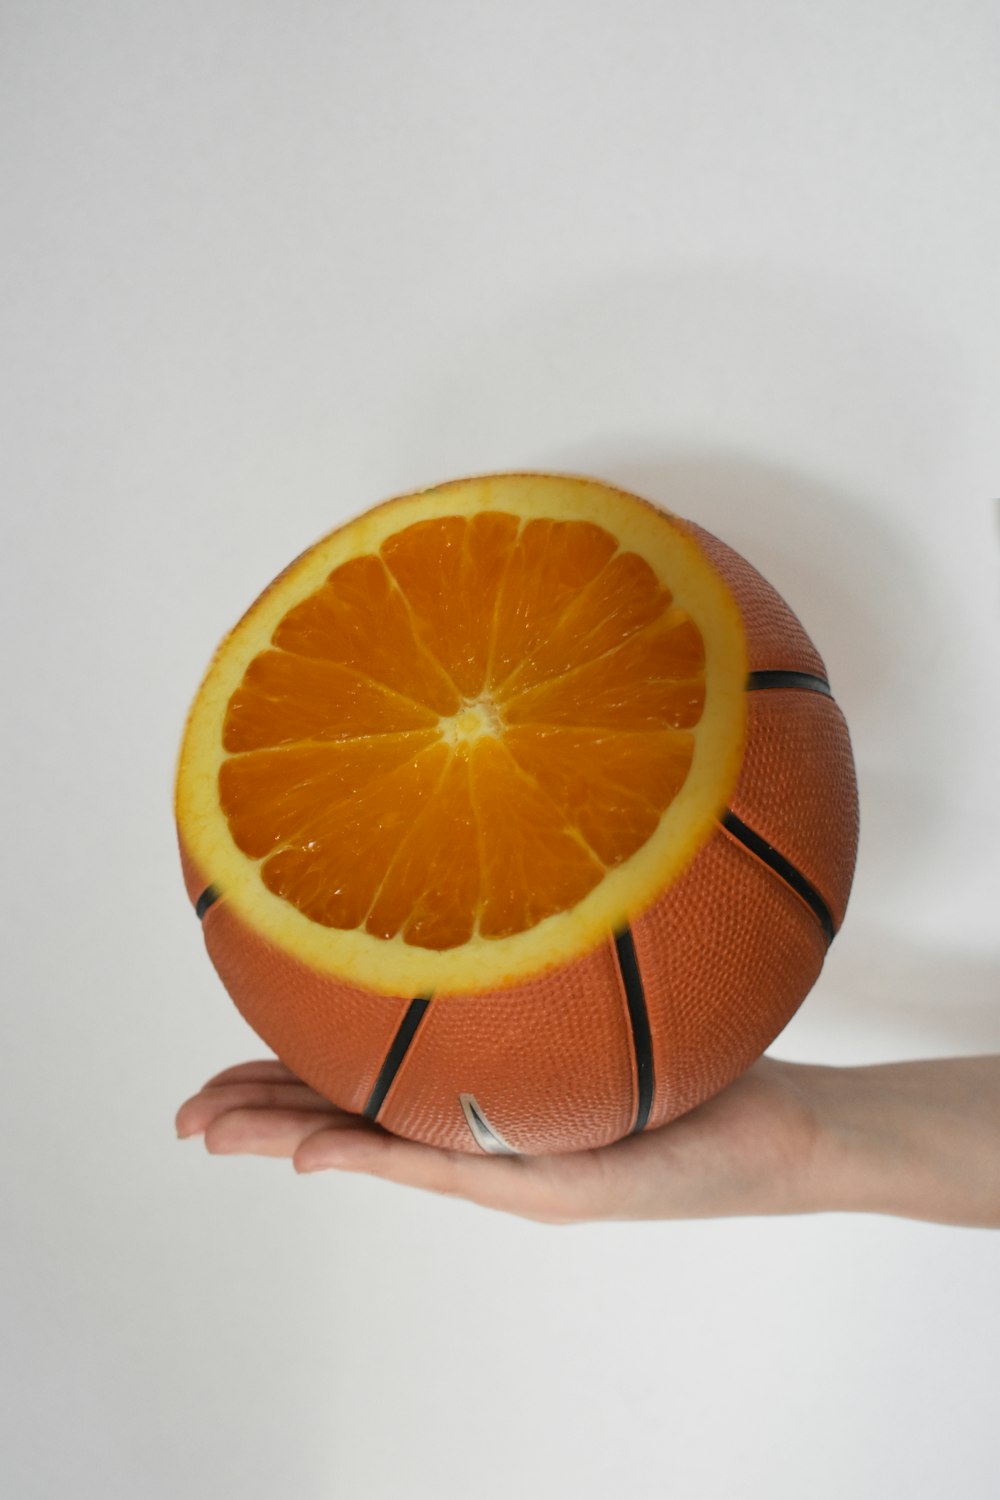 persona sosteniendo una fruta naranja sobre una superficie blanca